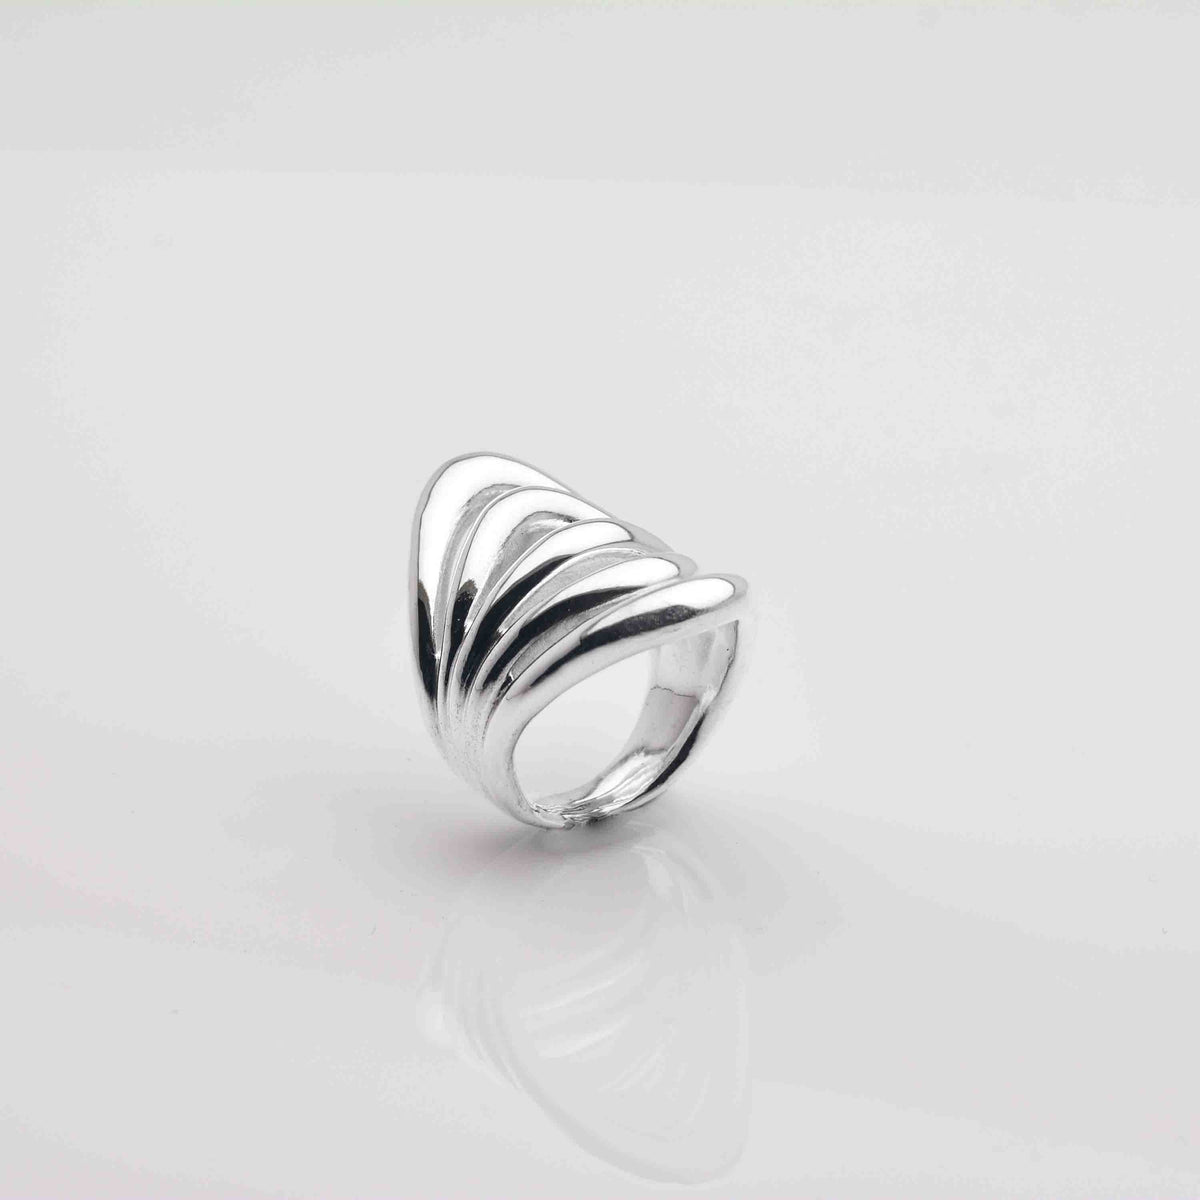 Cinco Silver Ring ist ein Ring mit fünf Schleifen und einem organischen und einzigartigen Design